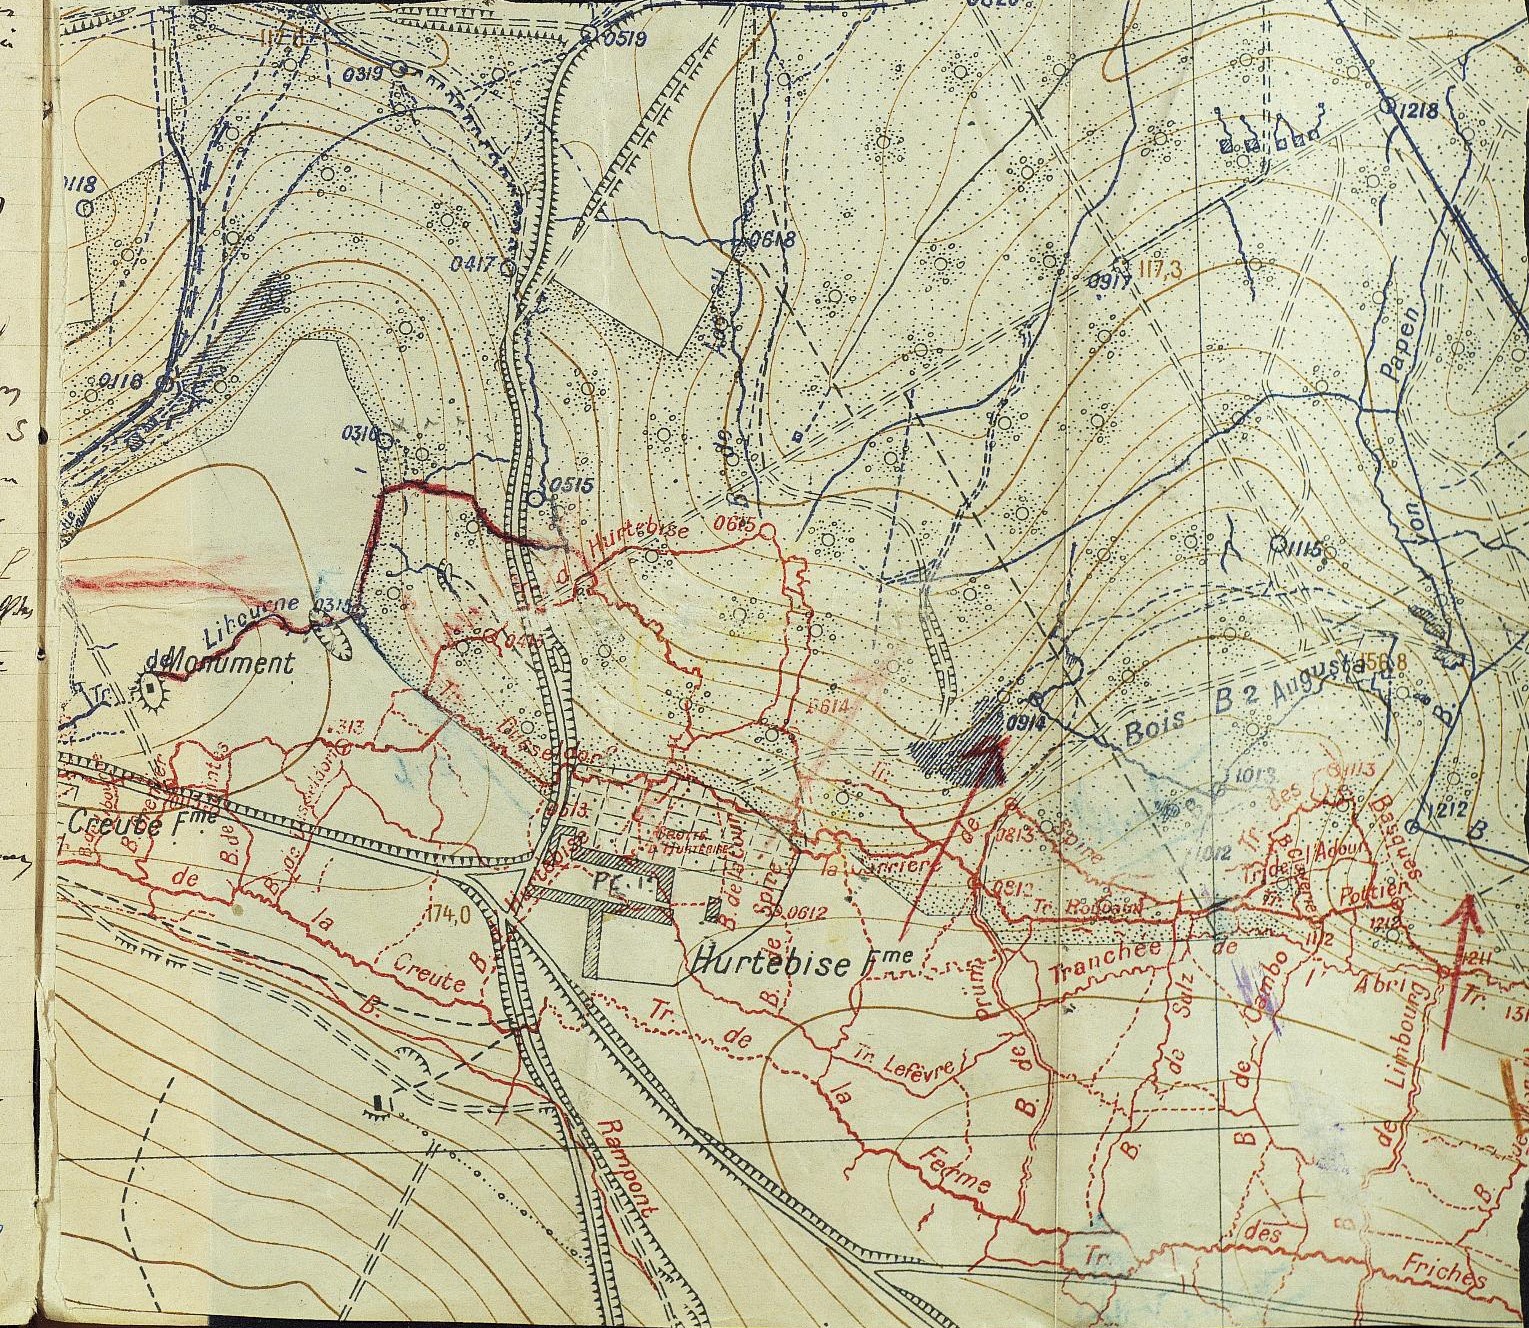 Hurtebise - secteur du 407e régiment d'infanterie en septembre 1917 